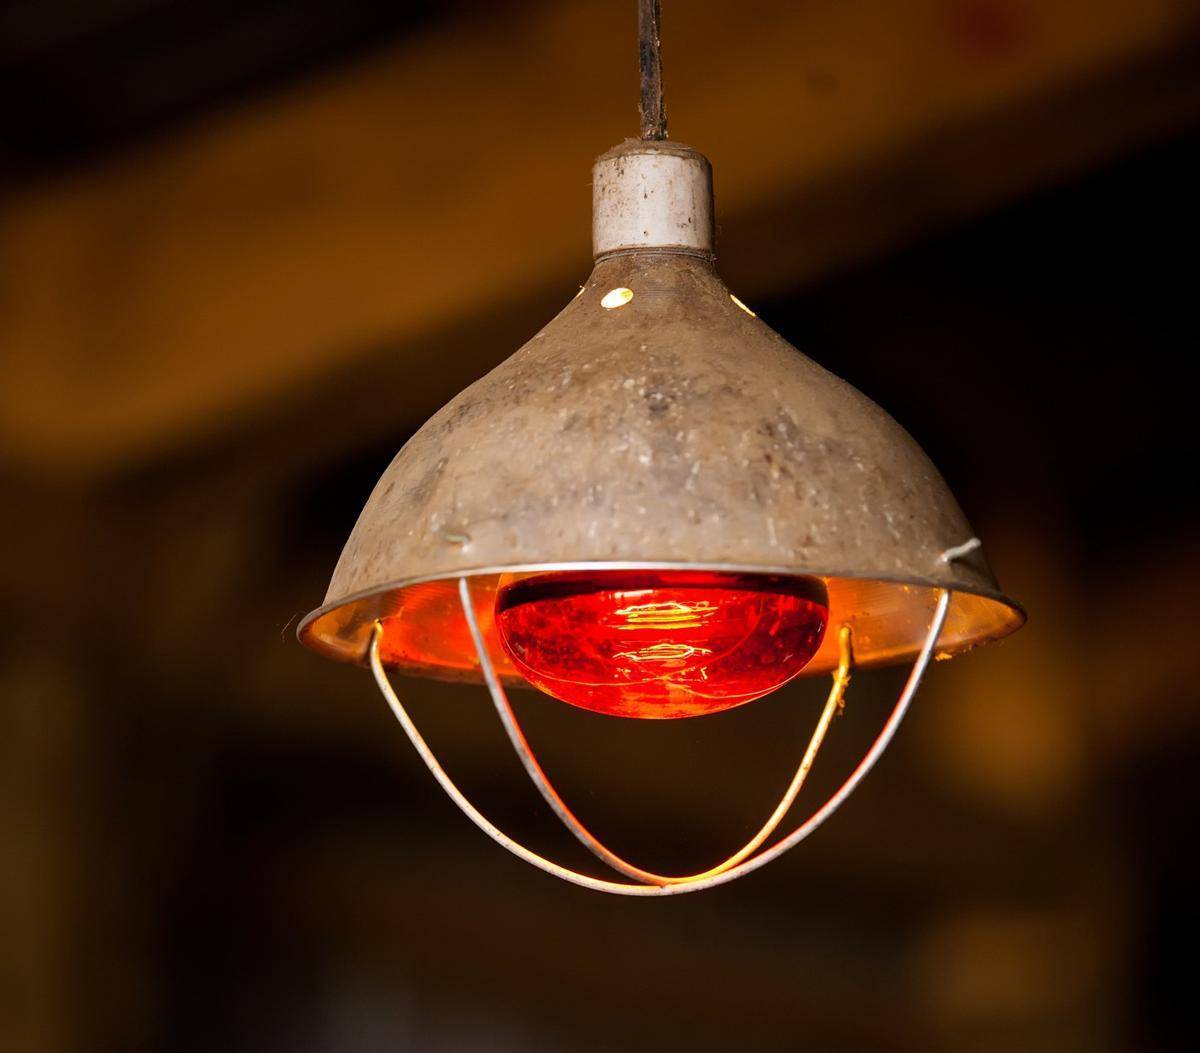 Инфракрасные лампы для обогрева курятника (обогреть): освещение красными лампами, с реле времени, какой мощности нужны